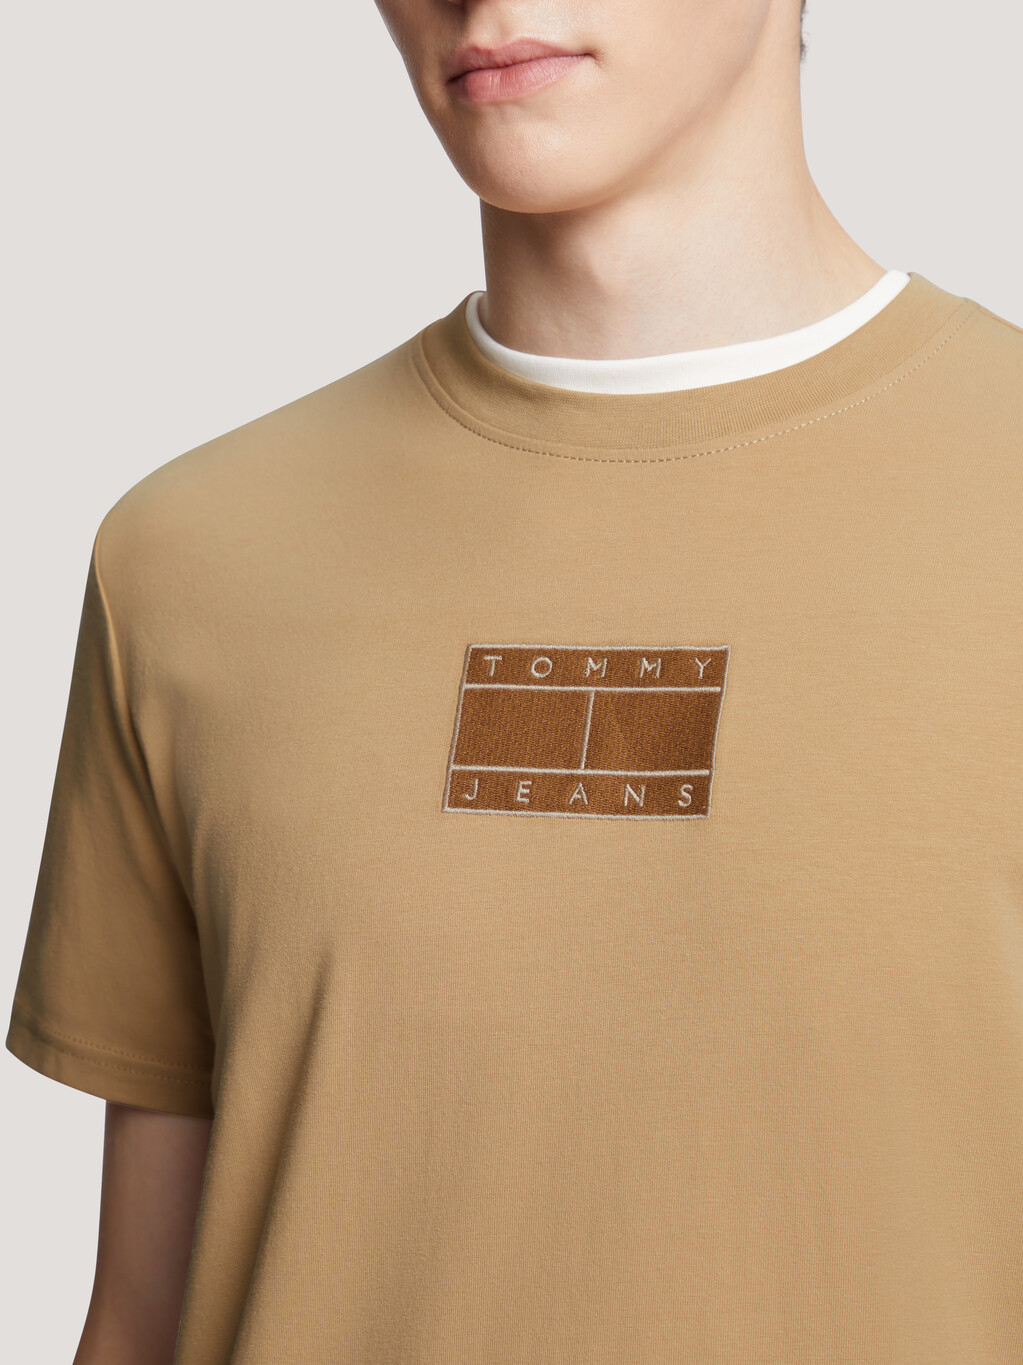 旗幟刺繡標準版型 T 恤, Tawny Sand, hi-res